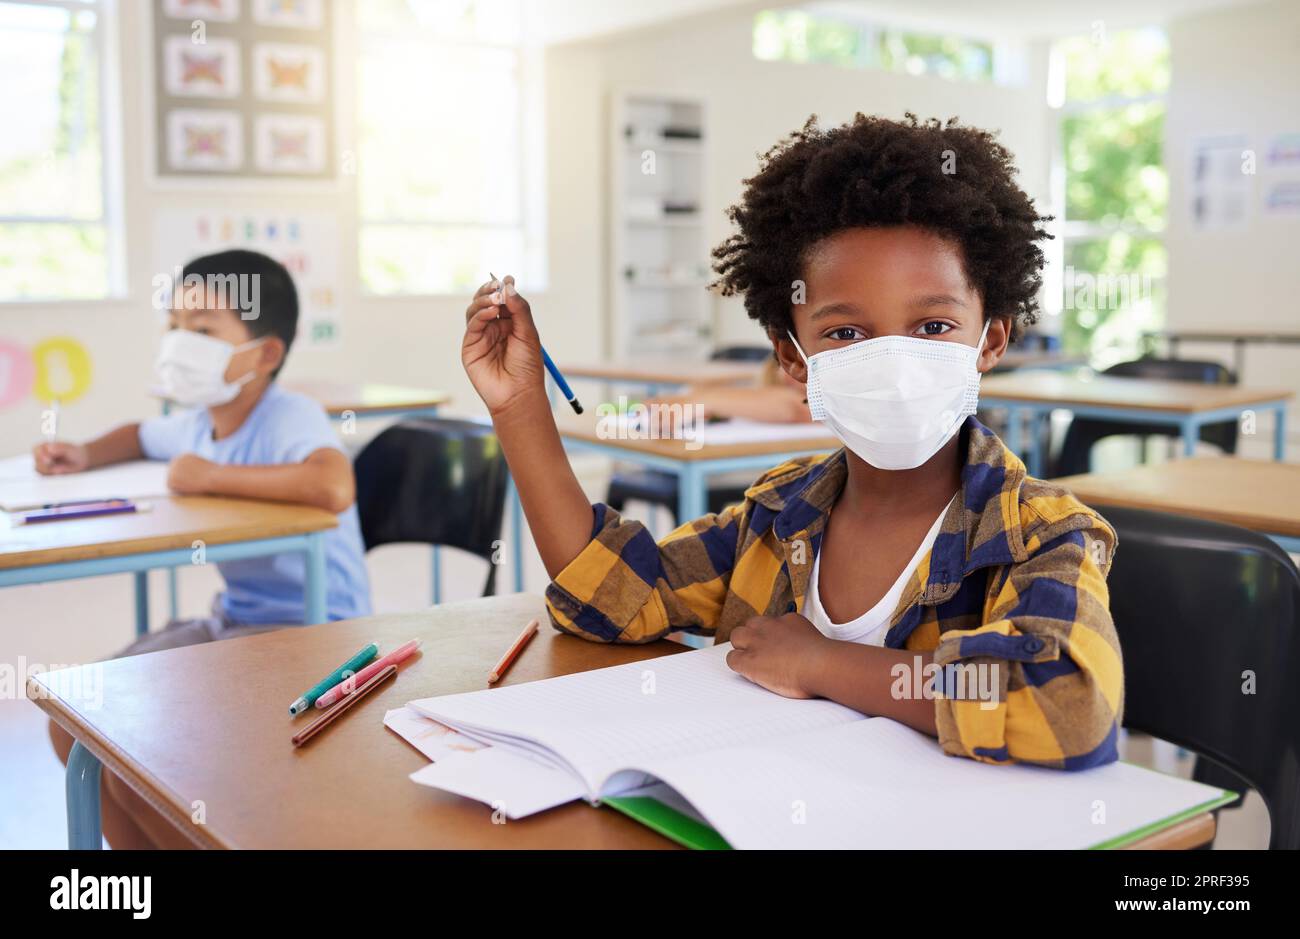 Kind oder Schüler im Unterricht während Covid, trägt eine Maske für Hygiene und Schutz vor der Coronavirus-Grippe. Porträt Kindergarten, Vorschule oder Grundschule Junge sitzt in einem Klassenzimmer und ist bereit zu lernen Stockfoto